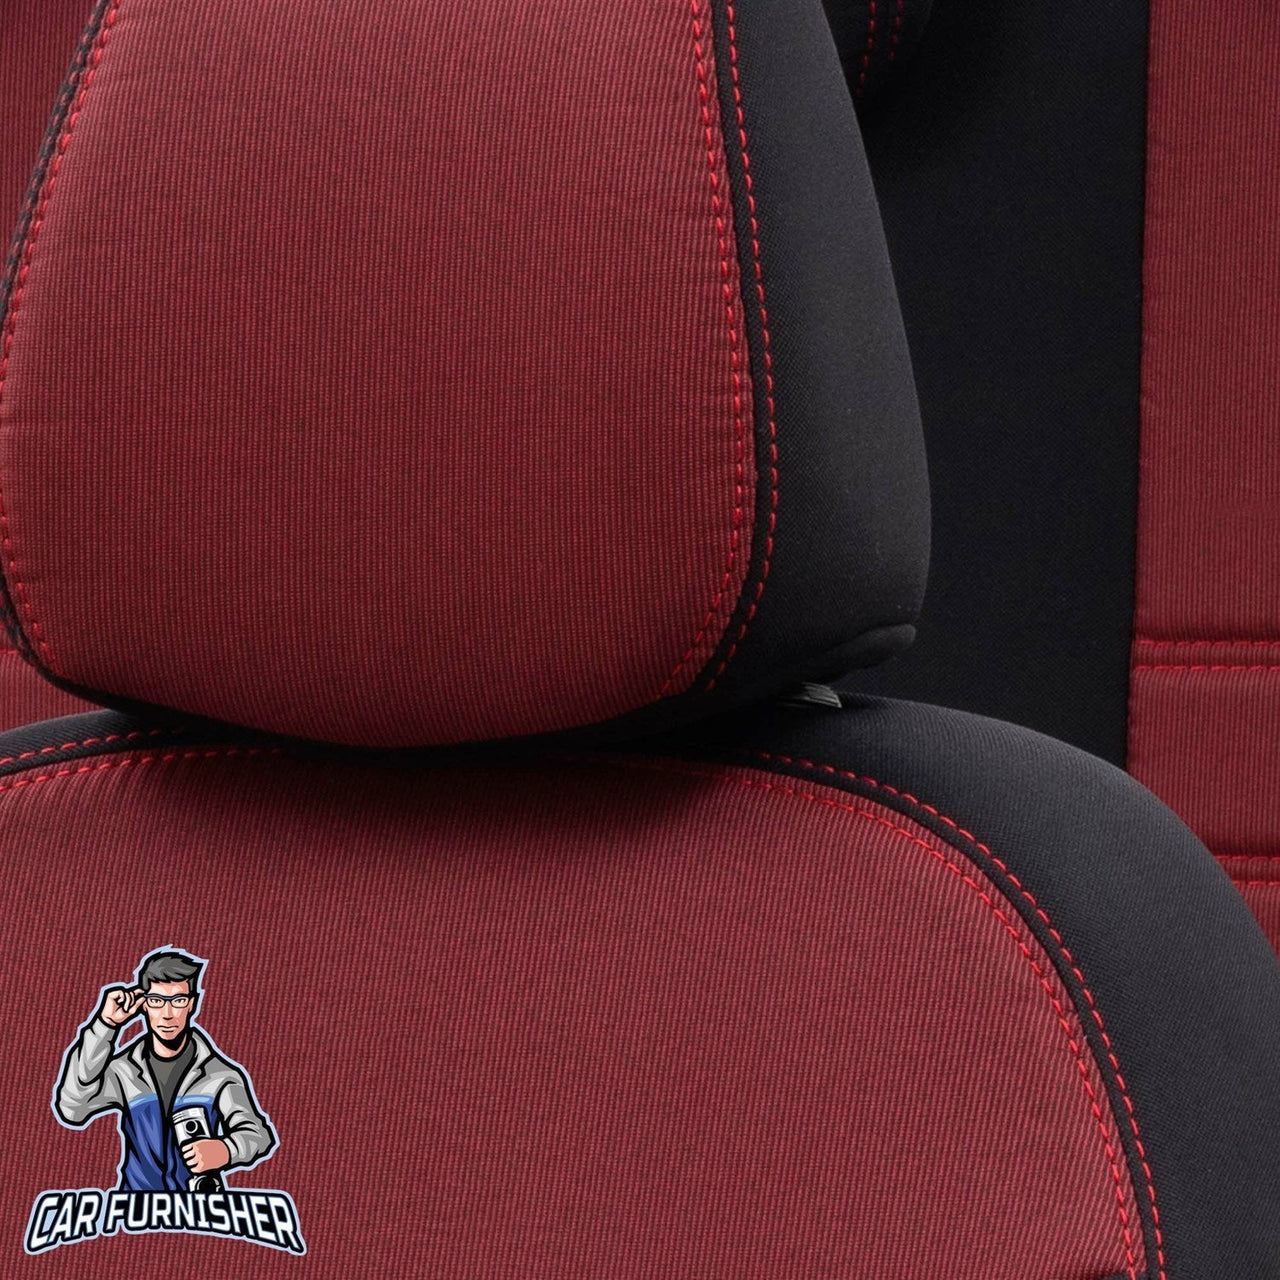 Volvo V70 Seat Cover Original Jacquard Design Red Jacquard Fabric